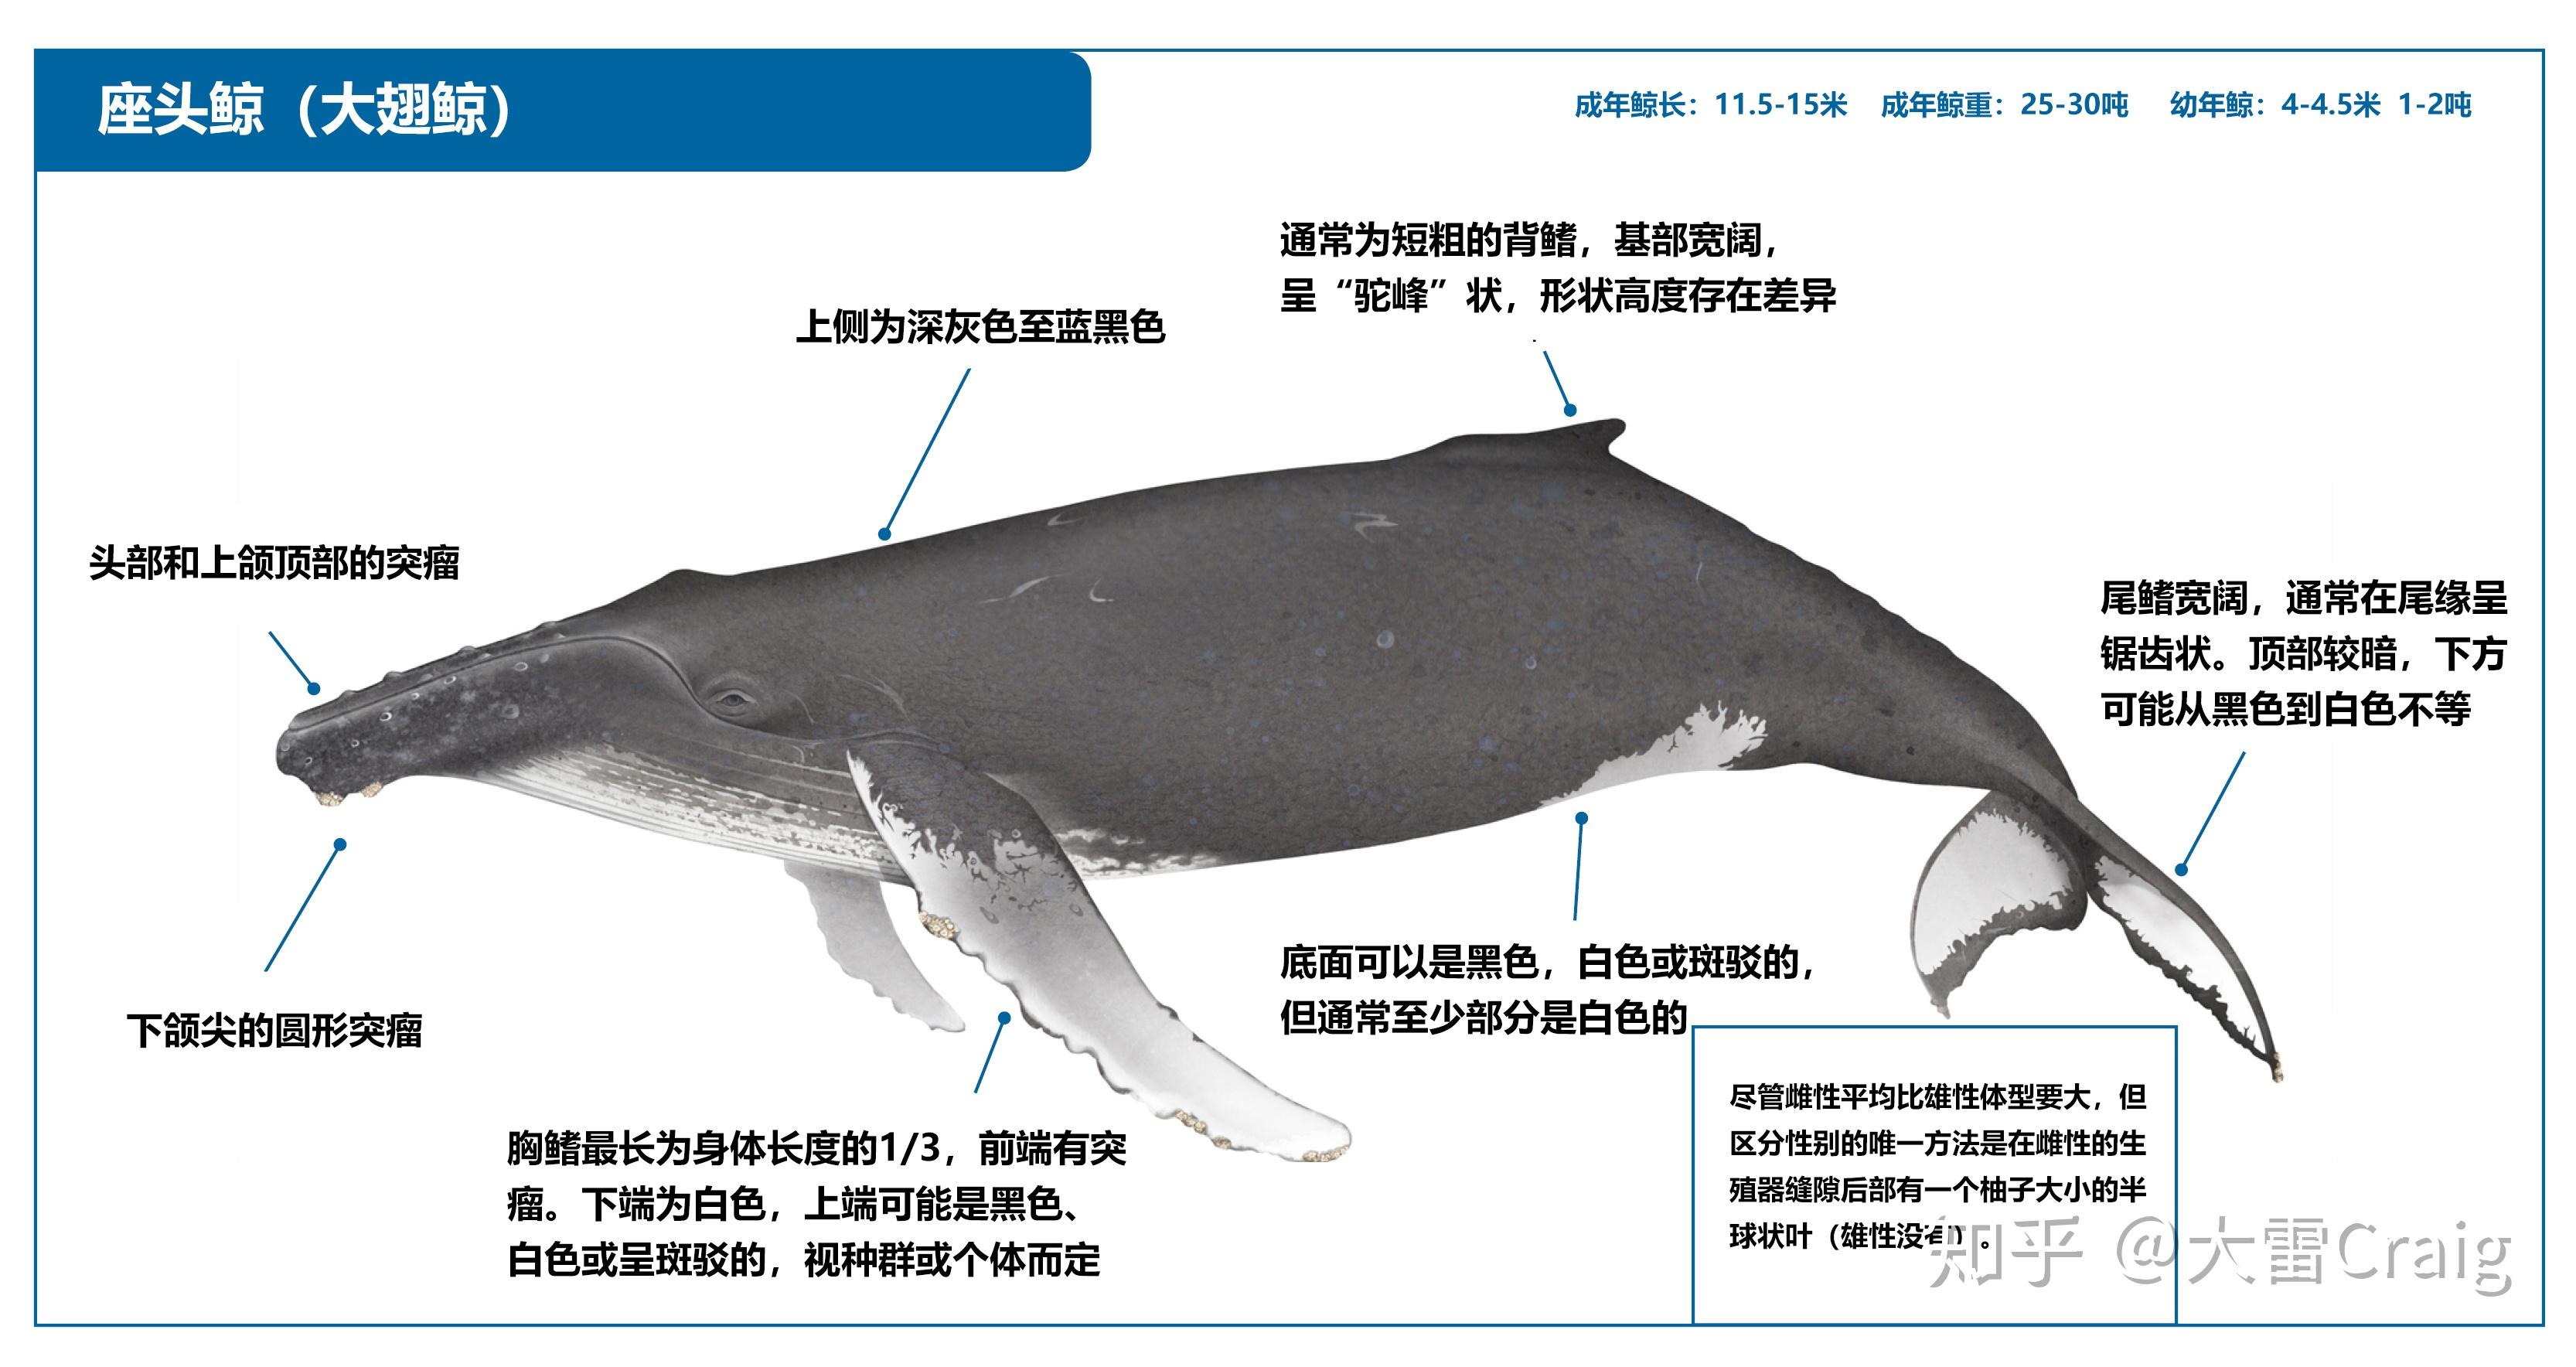 鲸鱼的生殖器长达三米是不是真的。 | 自然控小组 | 果壳网 科技有意思